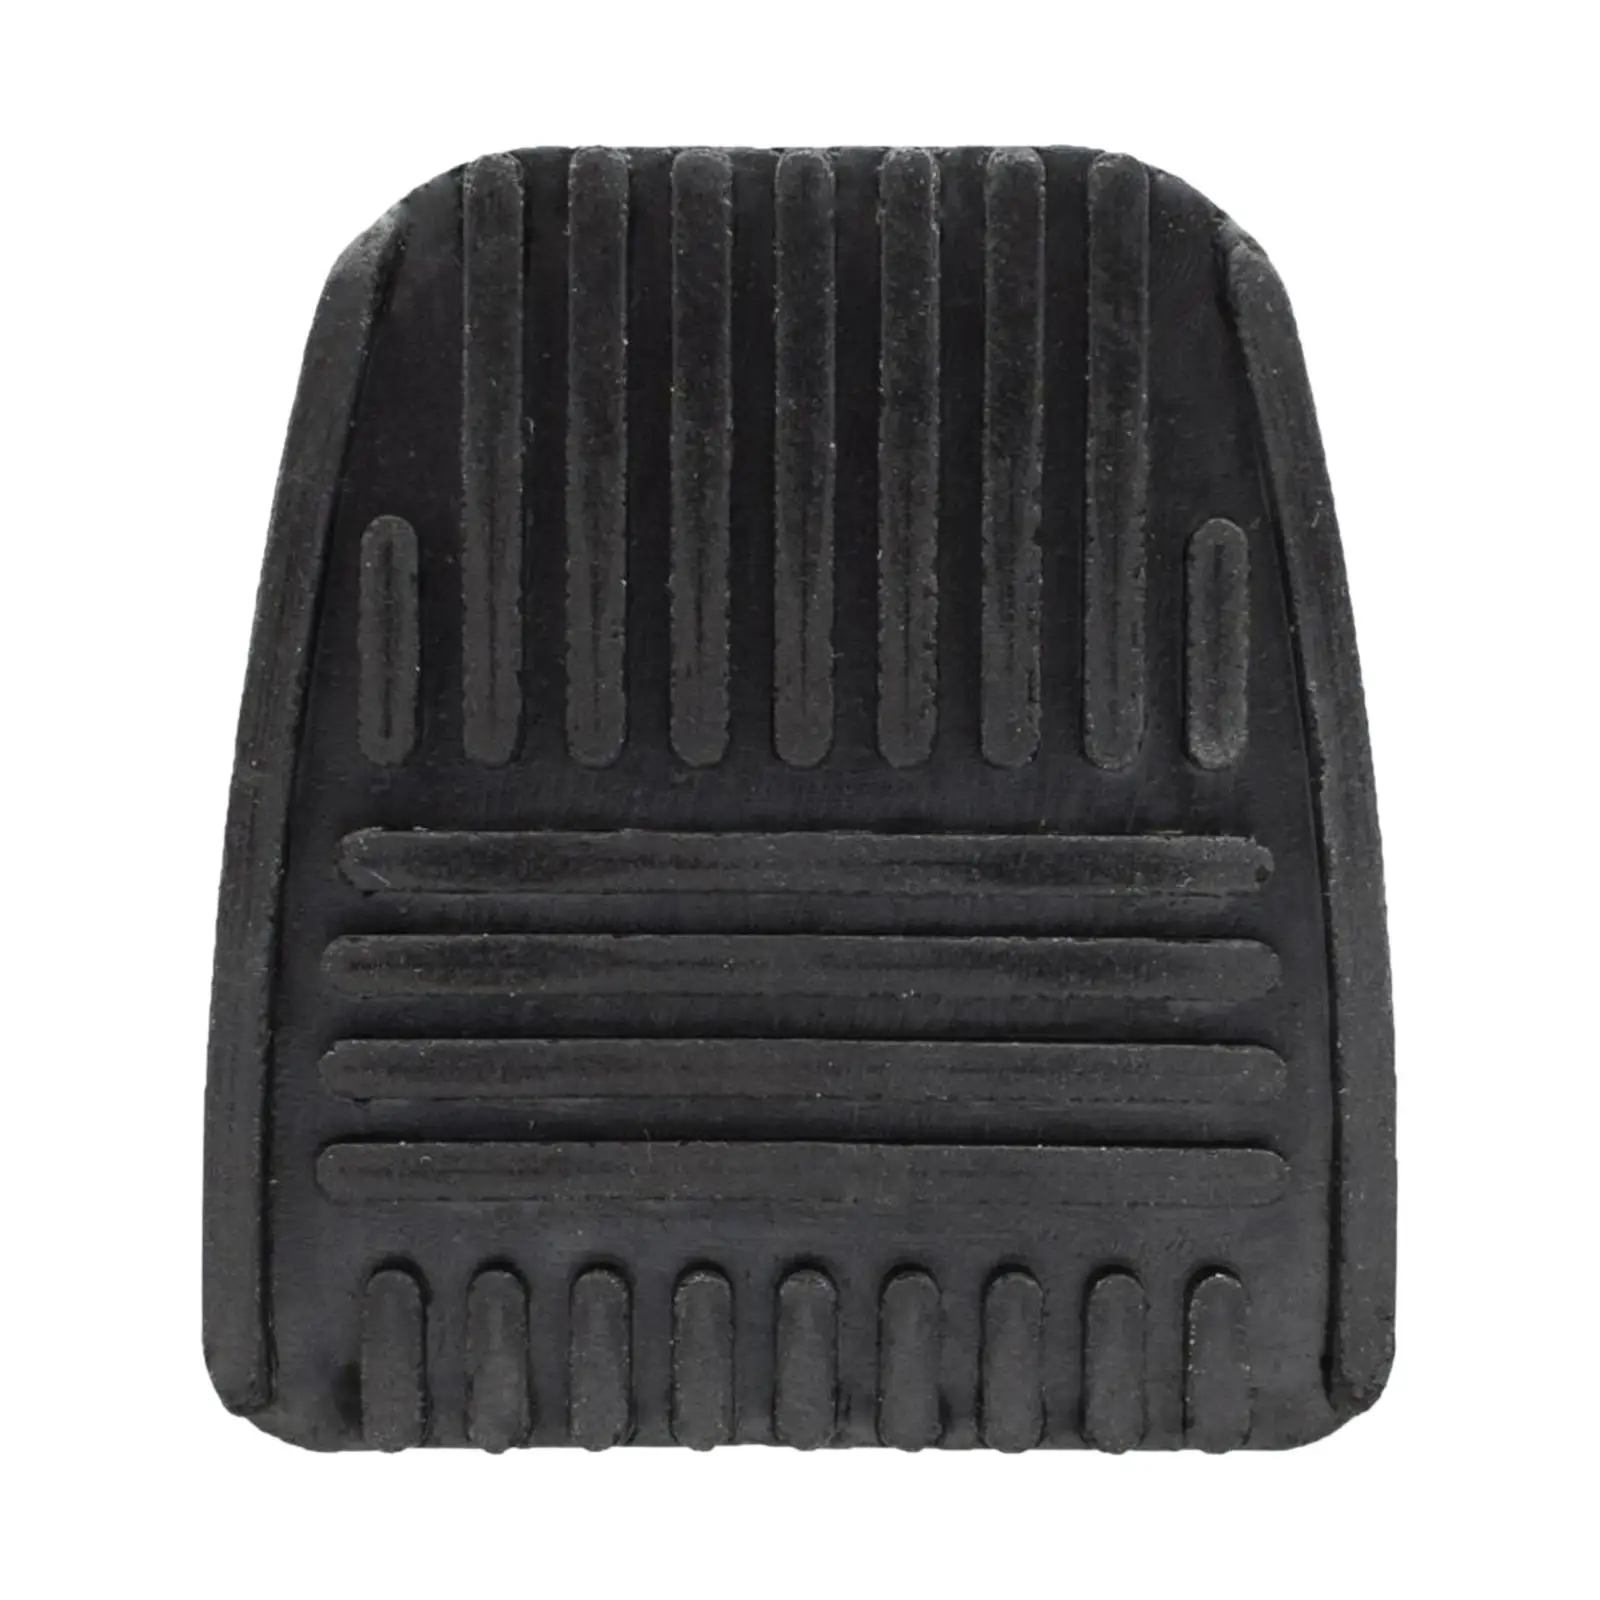 

Накладка на педаль тормоза и сцепления 31321-14020, черная, для Toyota Celica, tacoma